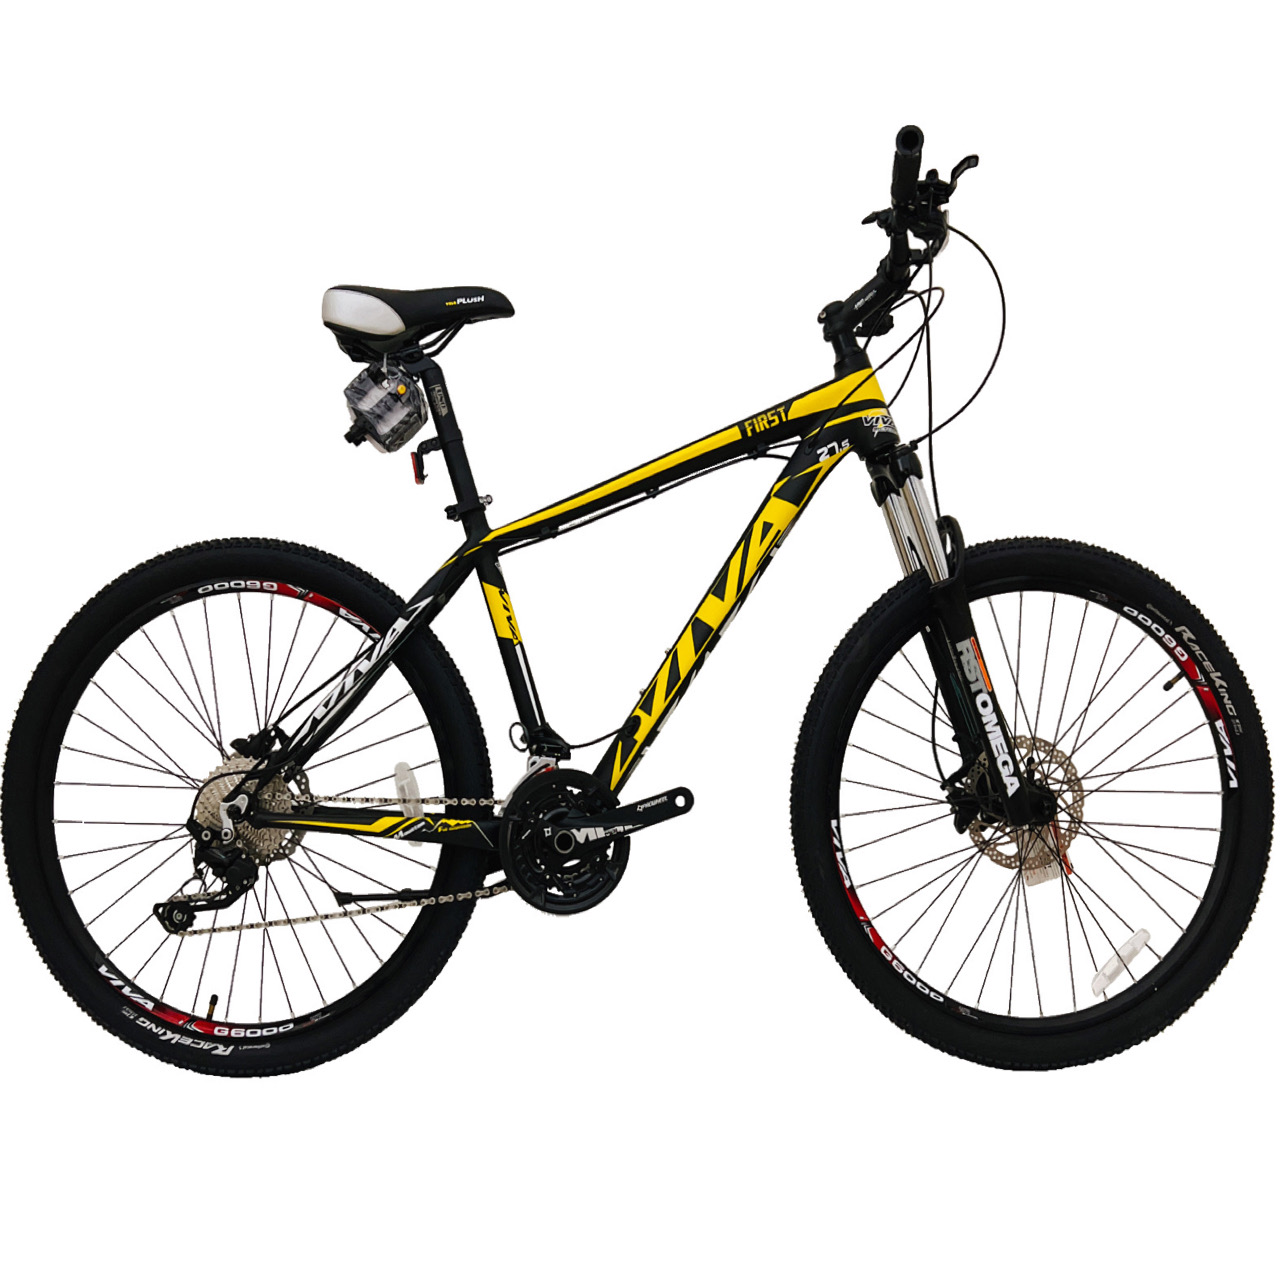 نکته خرید - قیمت روز دوچرخه کوهستان ویوا مدل FIRST کد هیدرولیک 30 سایز 27.5 خرید